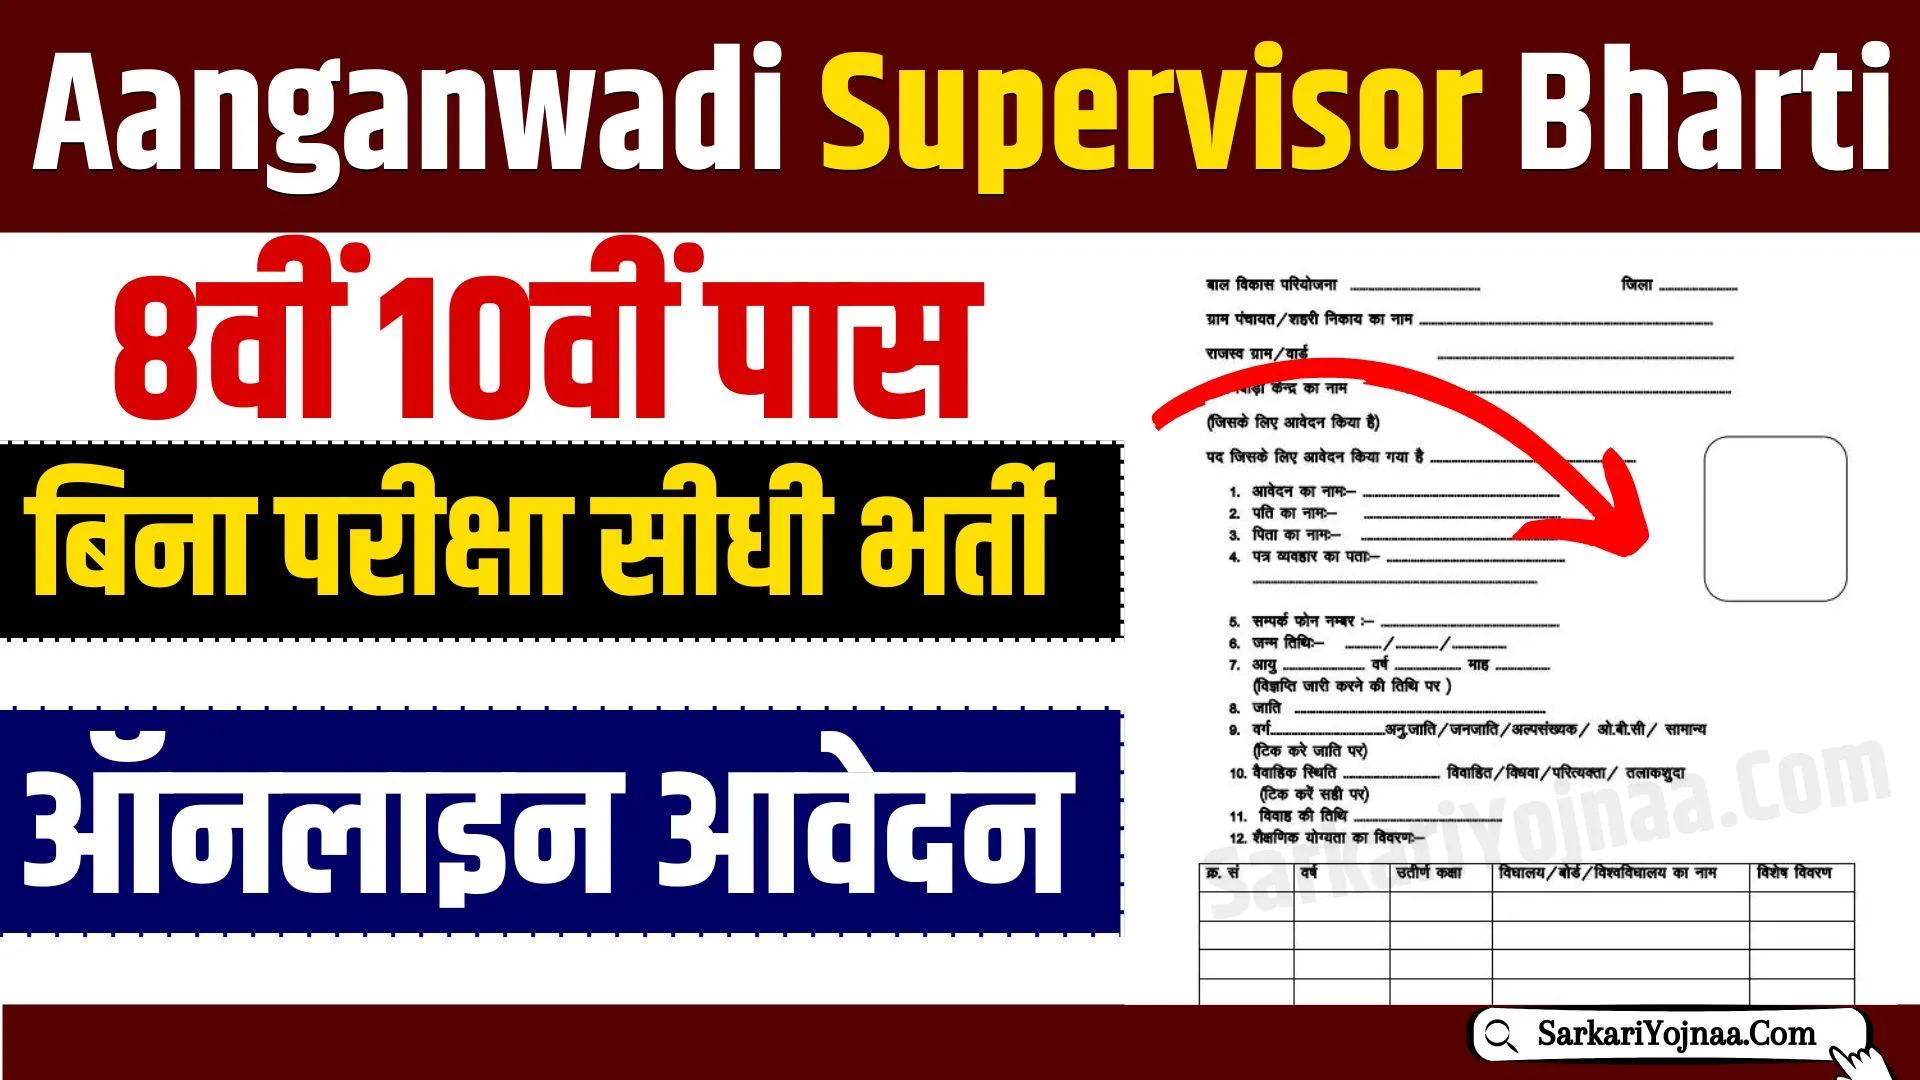 Supervisor Bharti Apply Online: हजारों पदों पर बिना परीक्षा की भर्ती, जल्दी करें आवेदन!